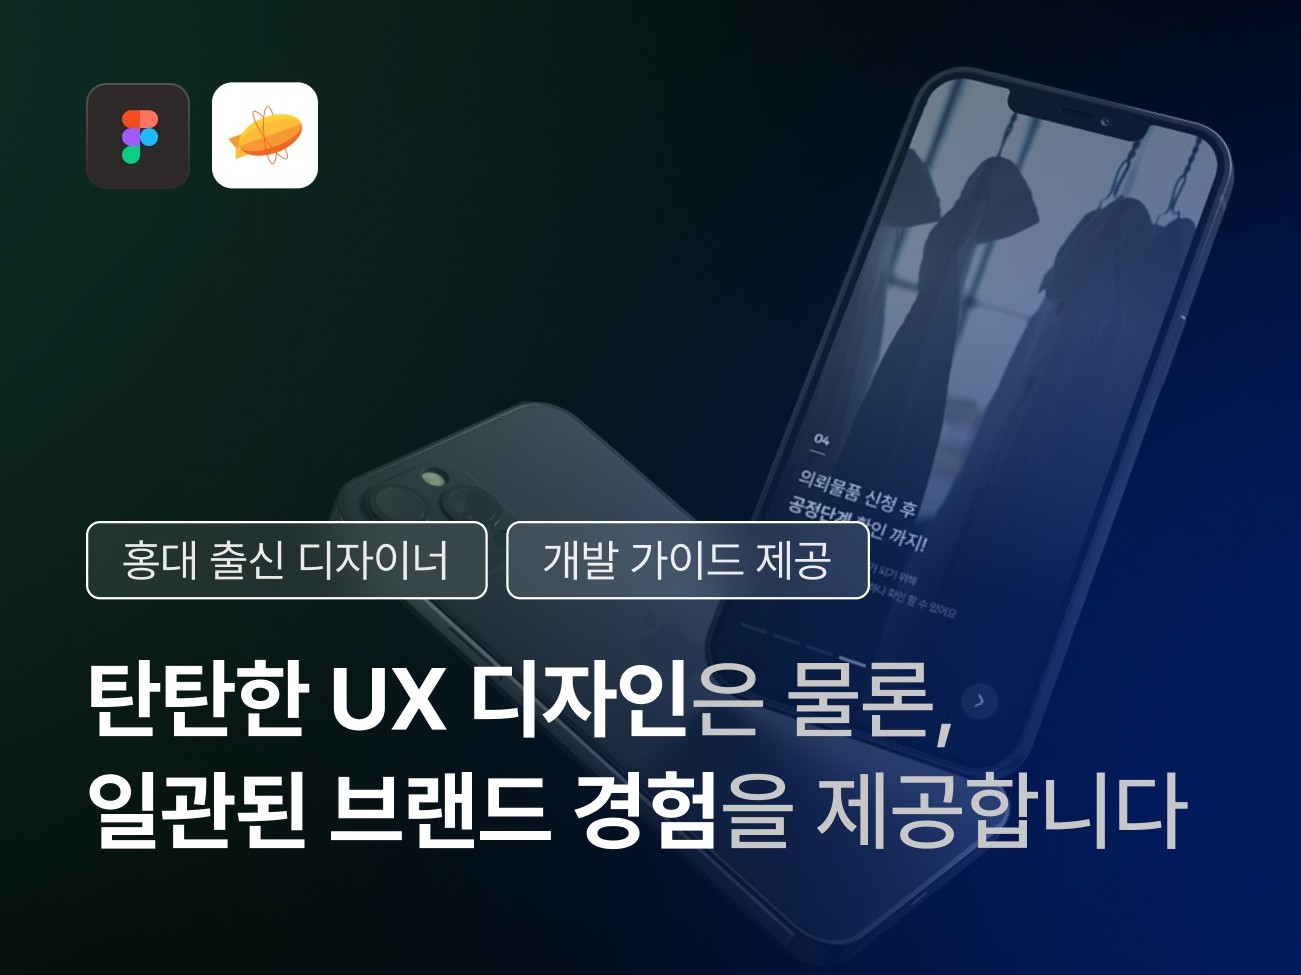 탄탄한 UX 디자인과 일관된 서비스 경험을 제공합니다.